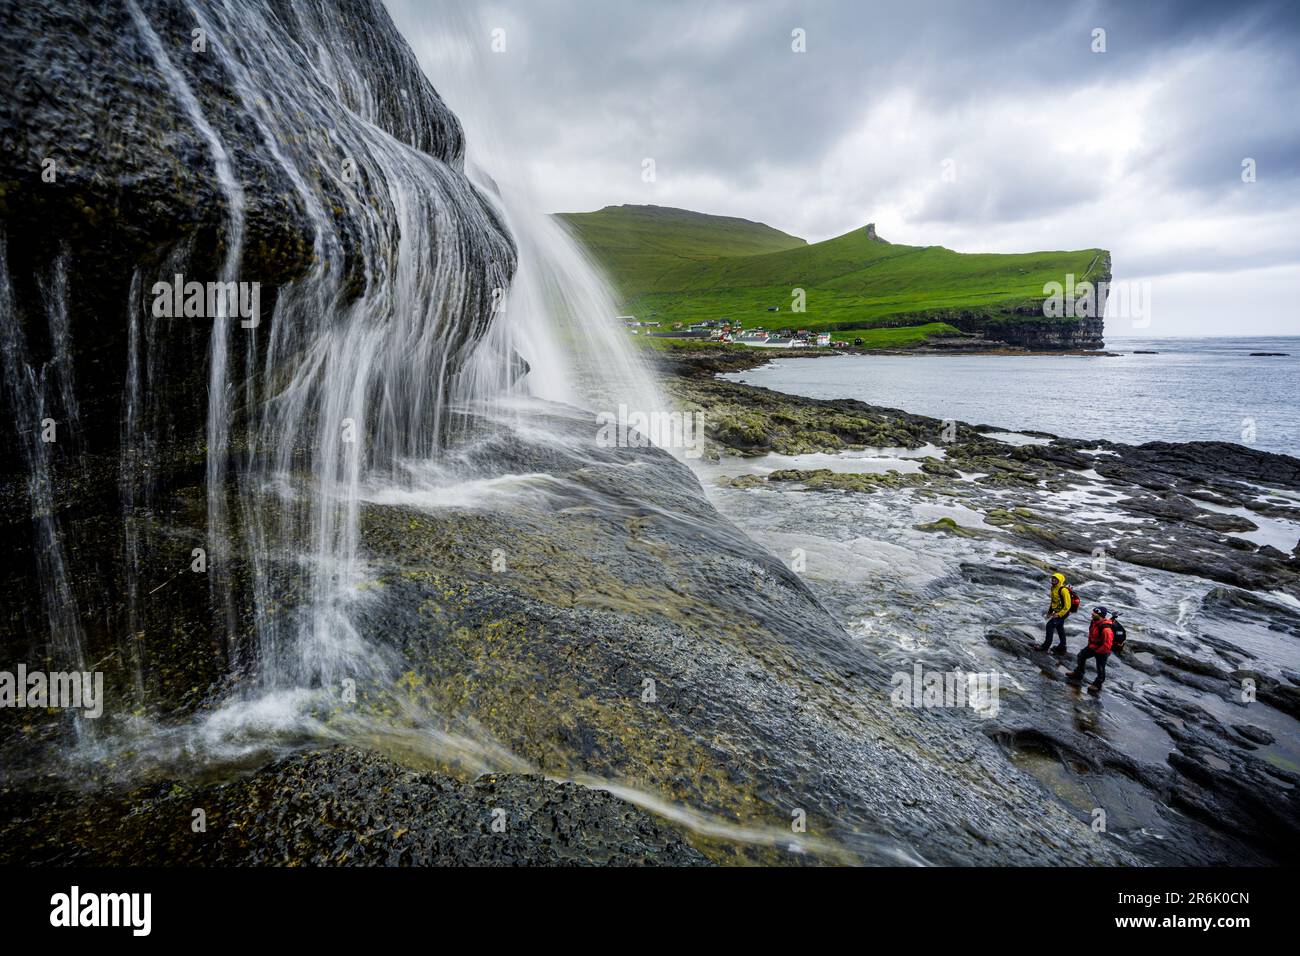 Vista ad angolo alto di due escursionisti che ammirano una maestosa cascata che si erge sulle scogliere, Gjogv, Isola di Eysturoy, Isole Faroe, Danimarca, Europa Foto Stock